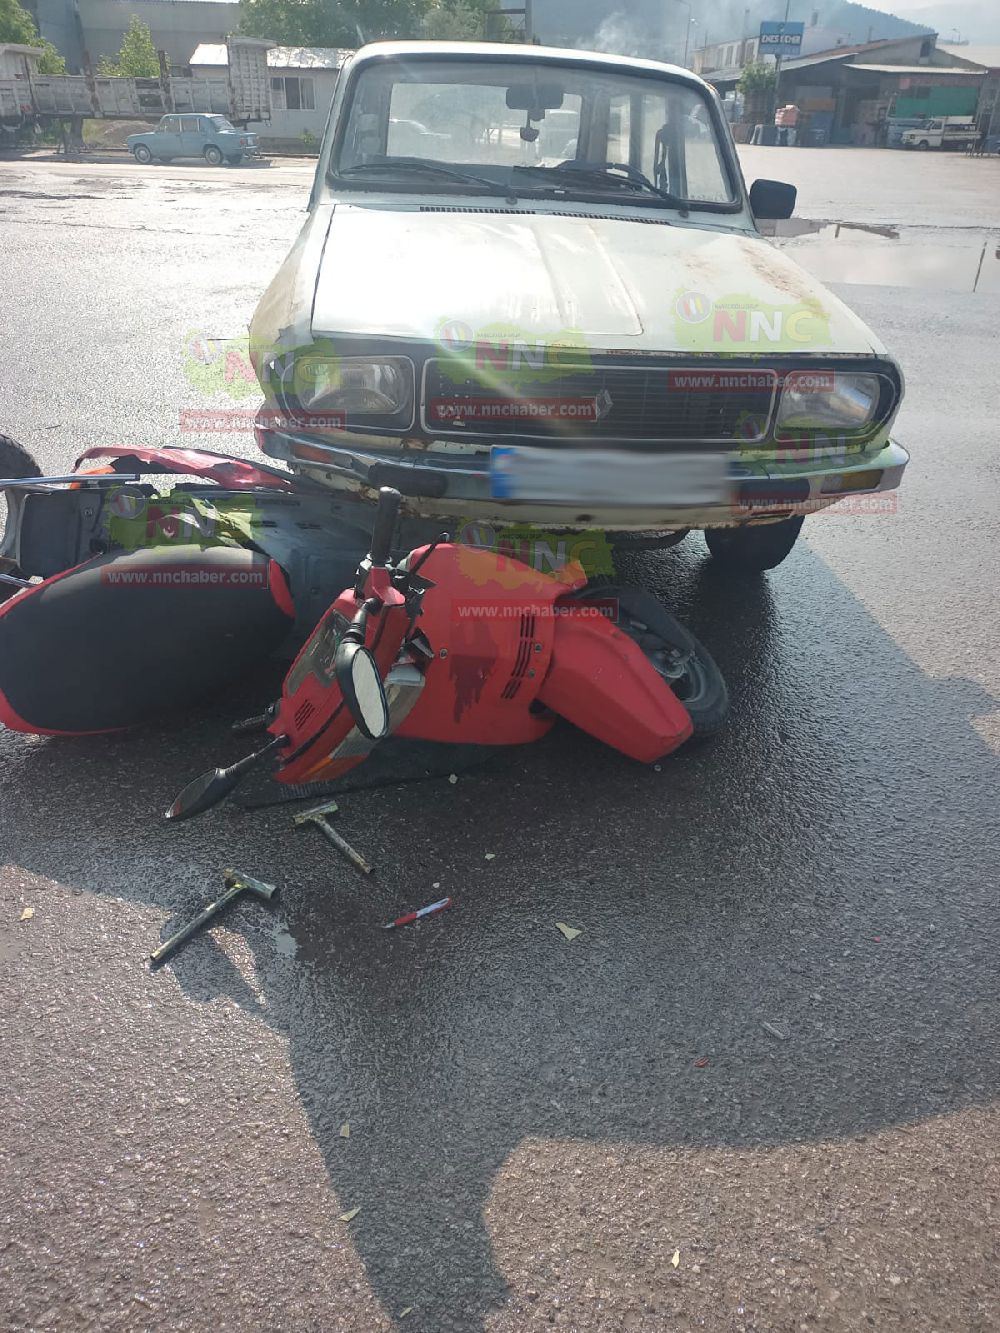 Burdur Bucak'ta Motosikletli kazada sürücü yaralandı